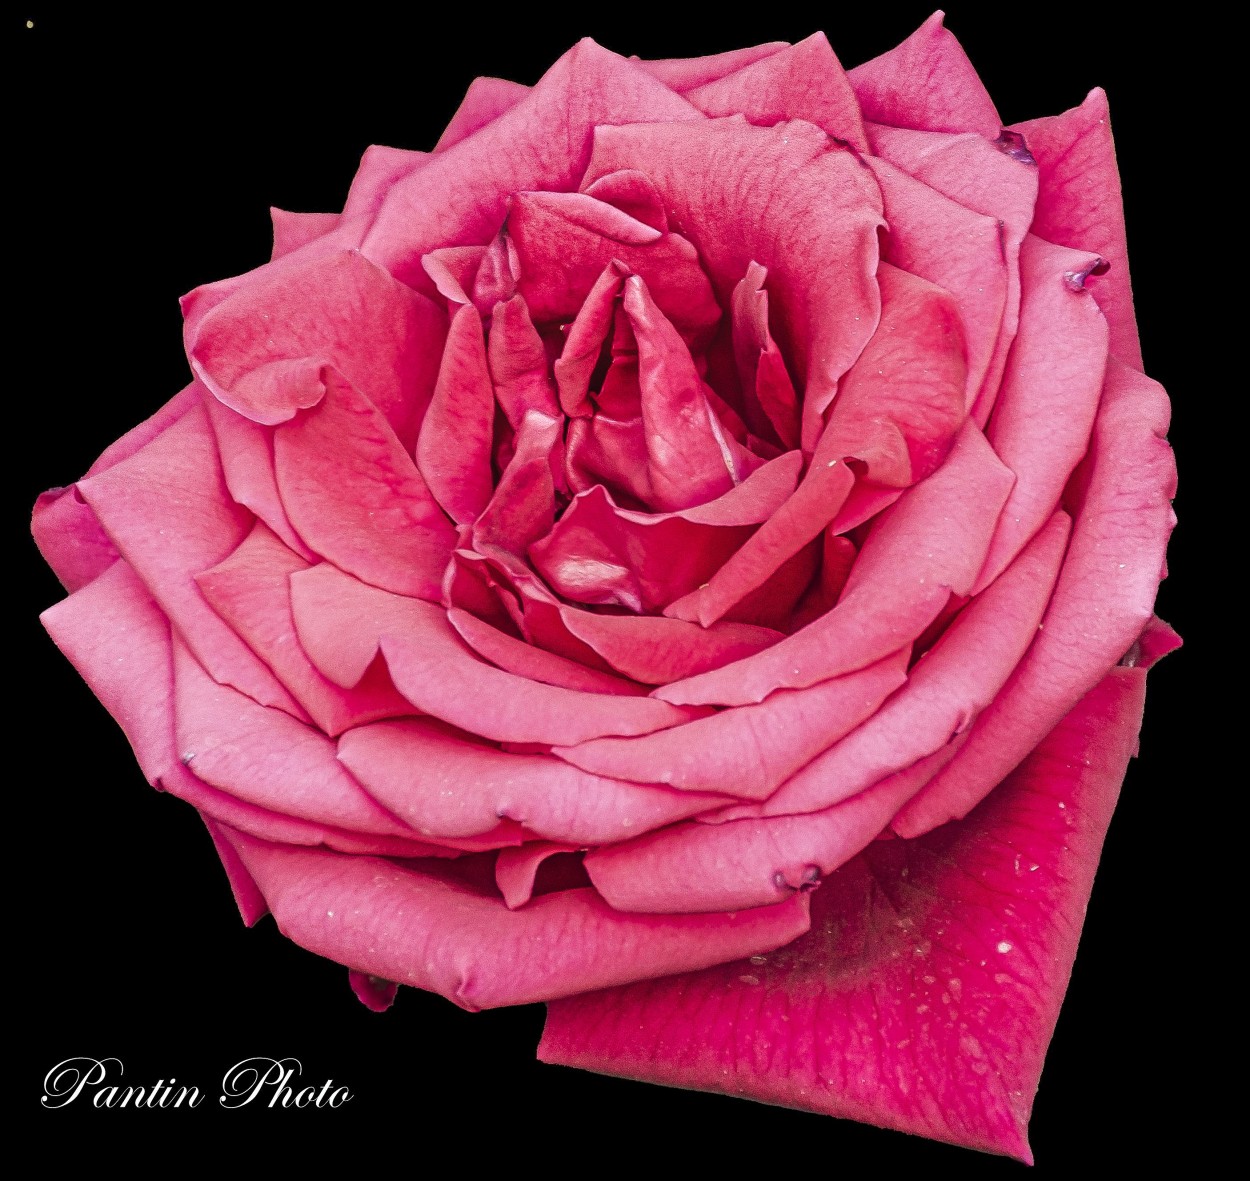 "Solamente una rosa" de Daniel Pantin